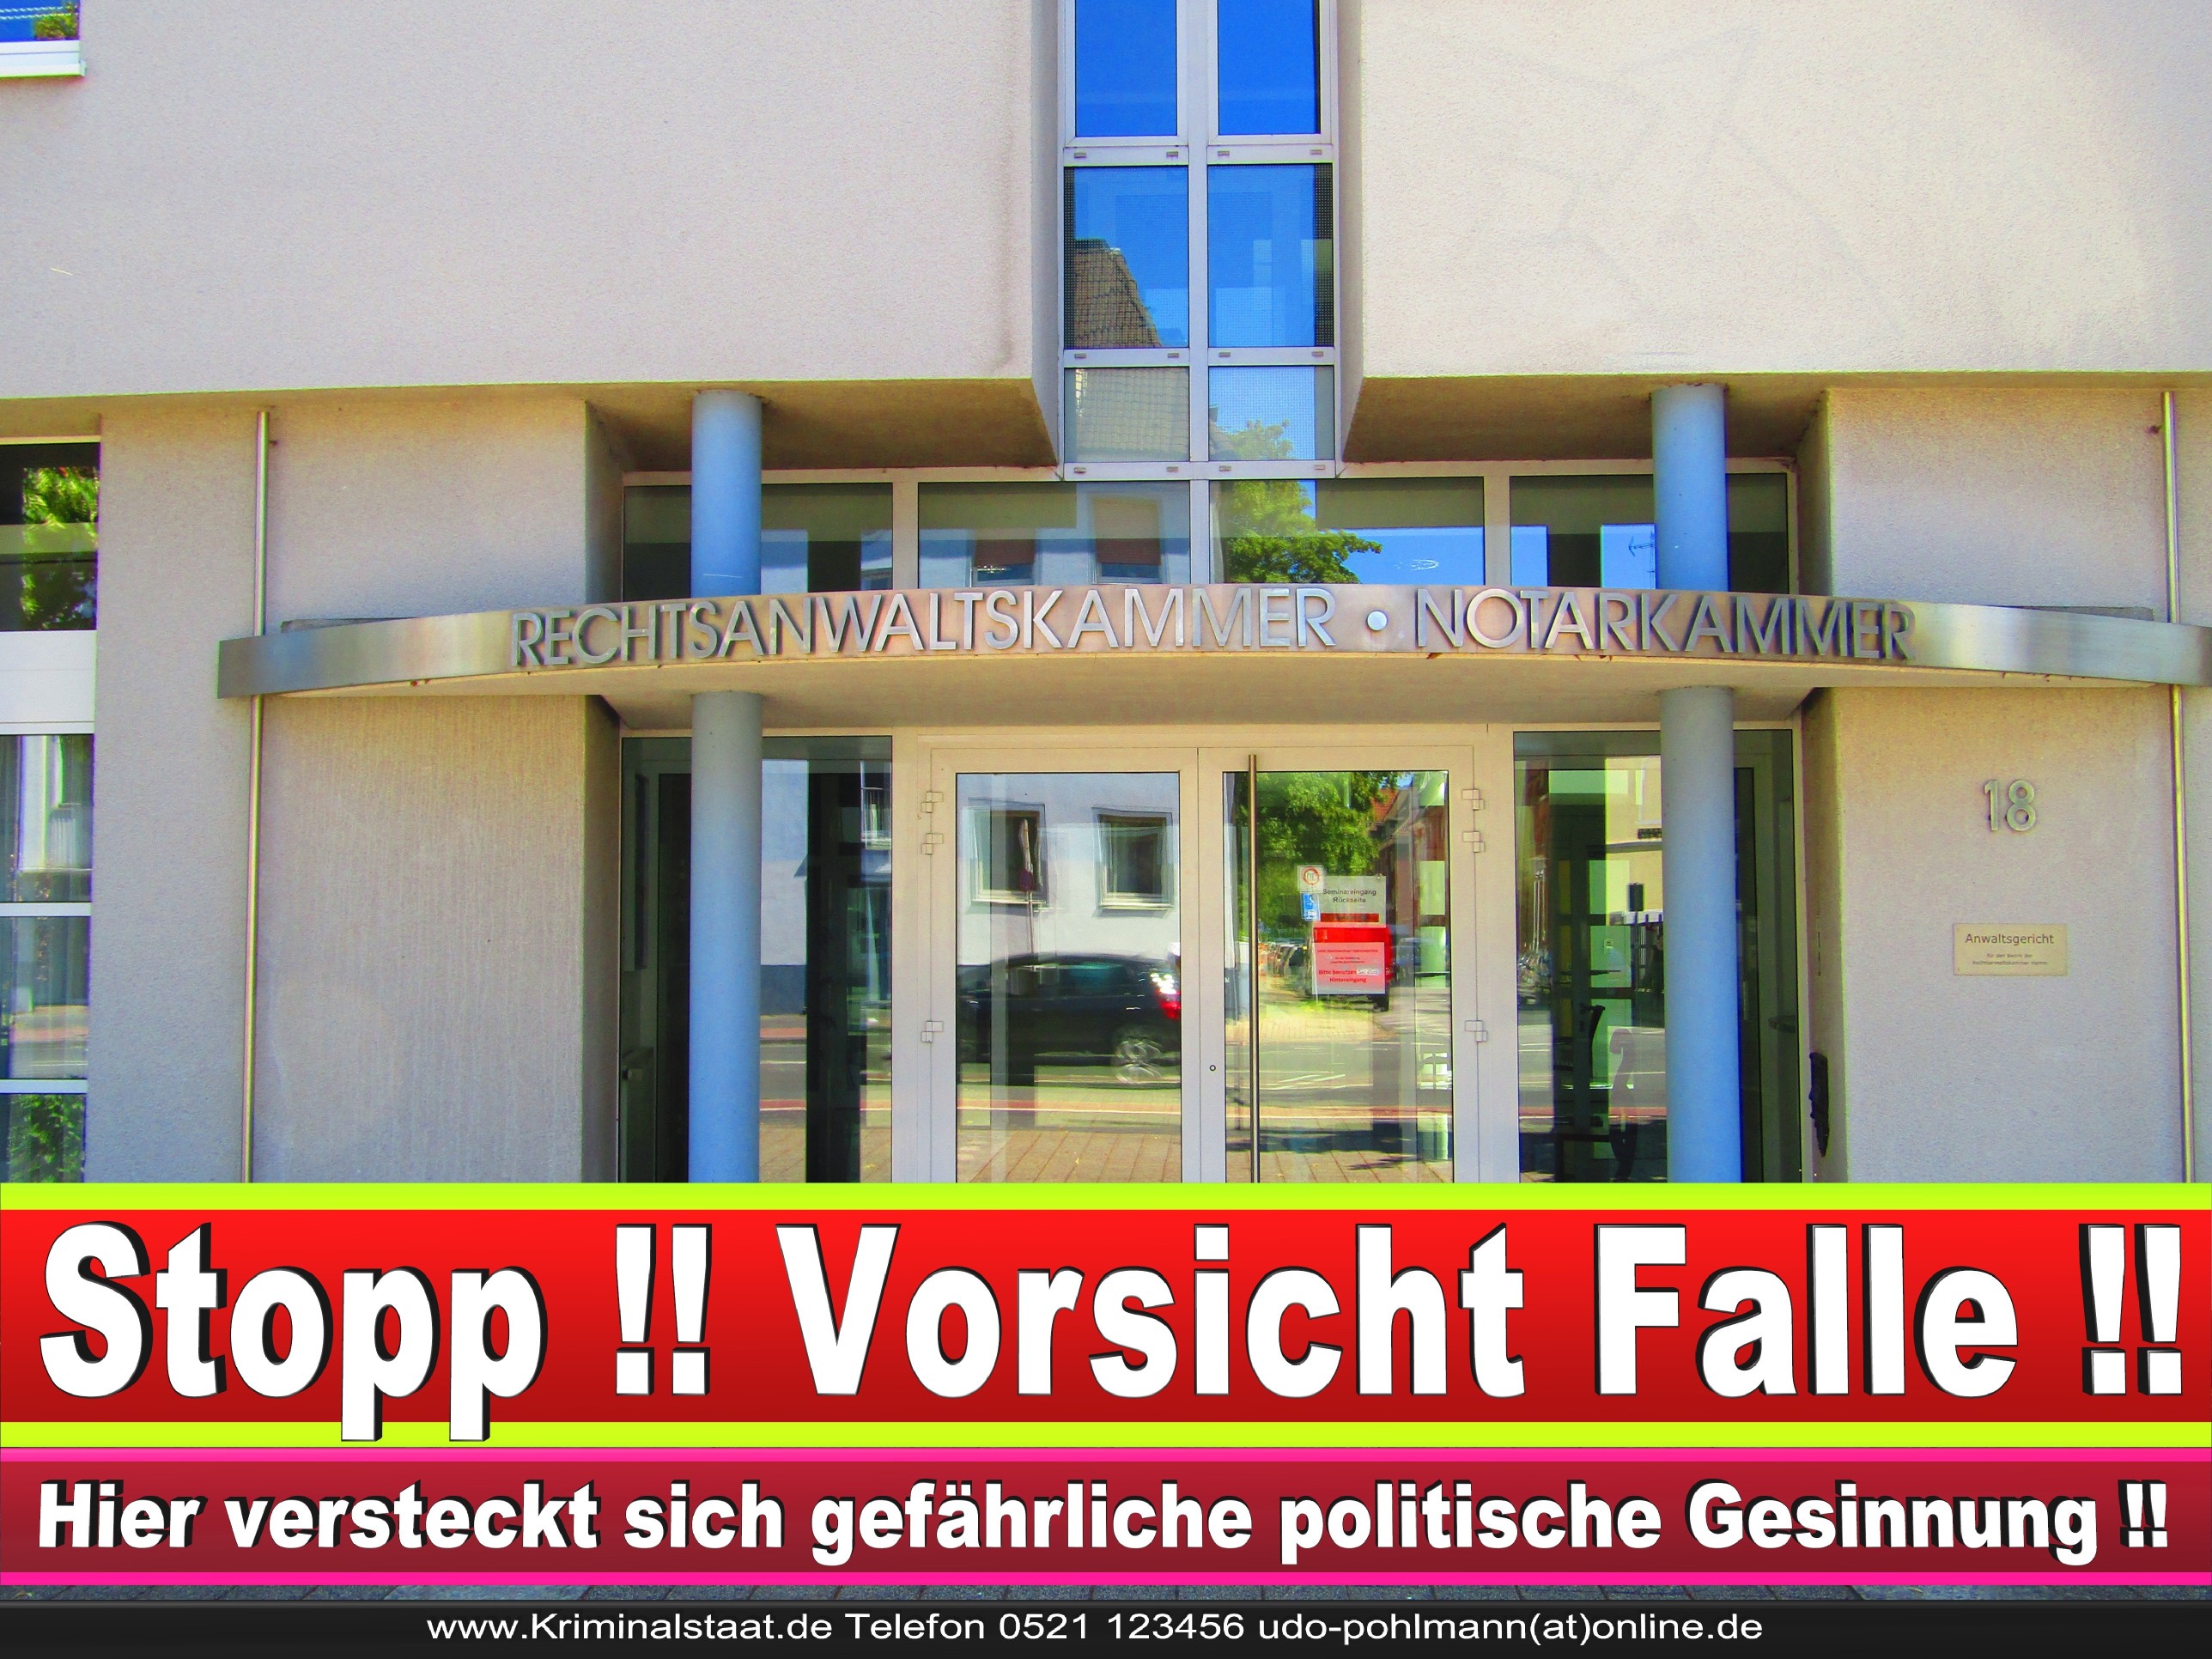 Rechtsanwaltskammer Hamm NRW Justizminister Rechtsanwalt Notar Vermögensverfall Urteil Rechtsprechung CDU SPD FDP Berufsordnung Rechtsanwälte Rechtsprechung (2)